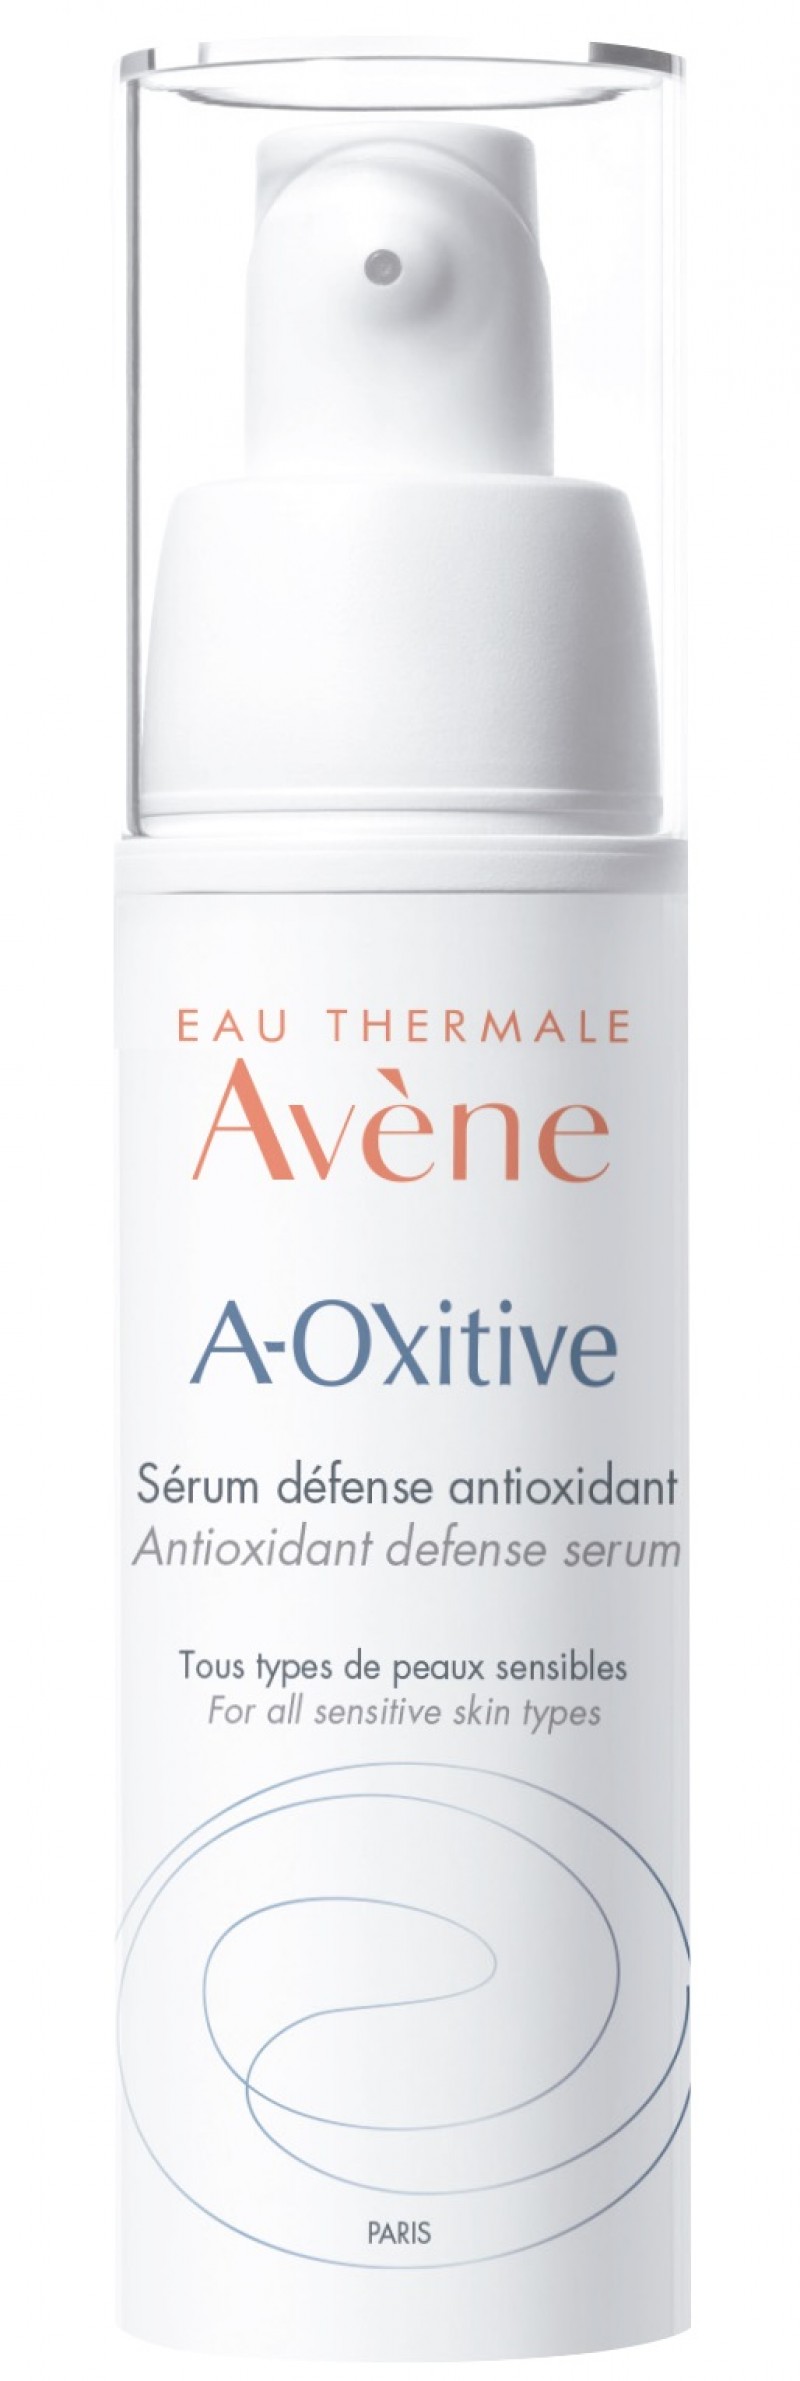 Avène lança novo creme antioxidante